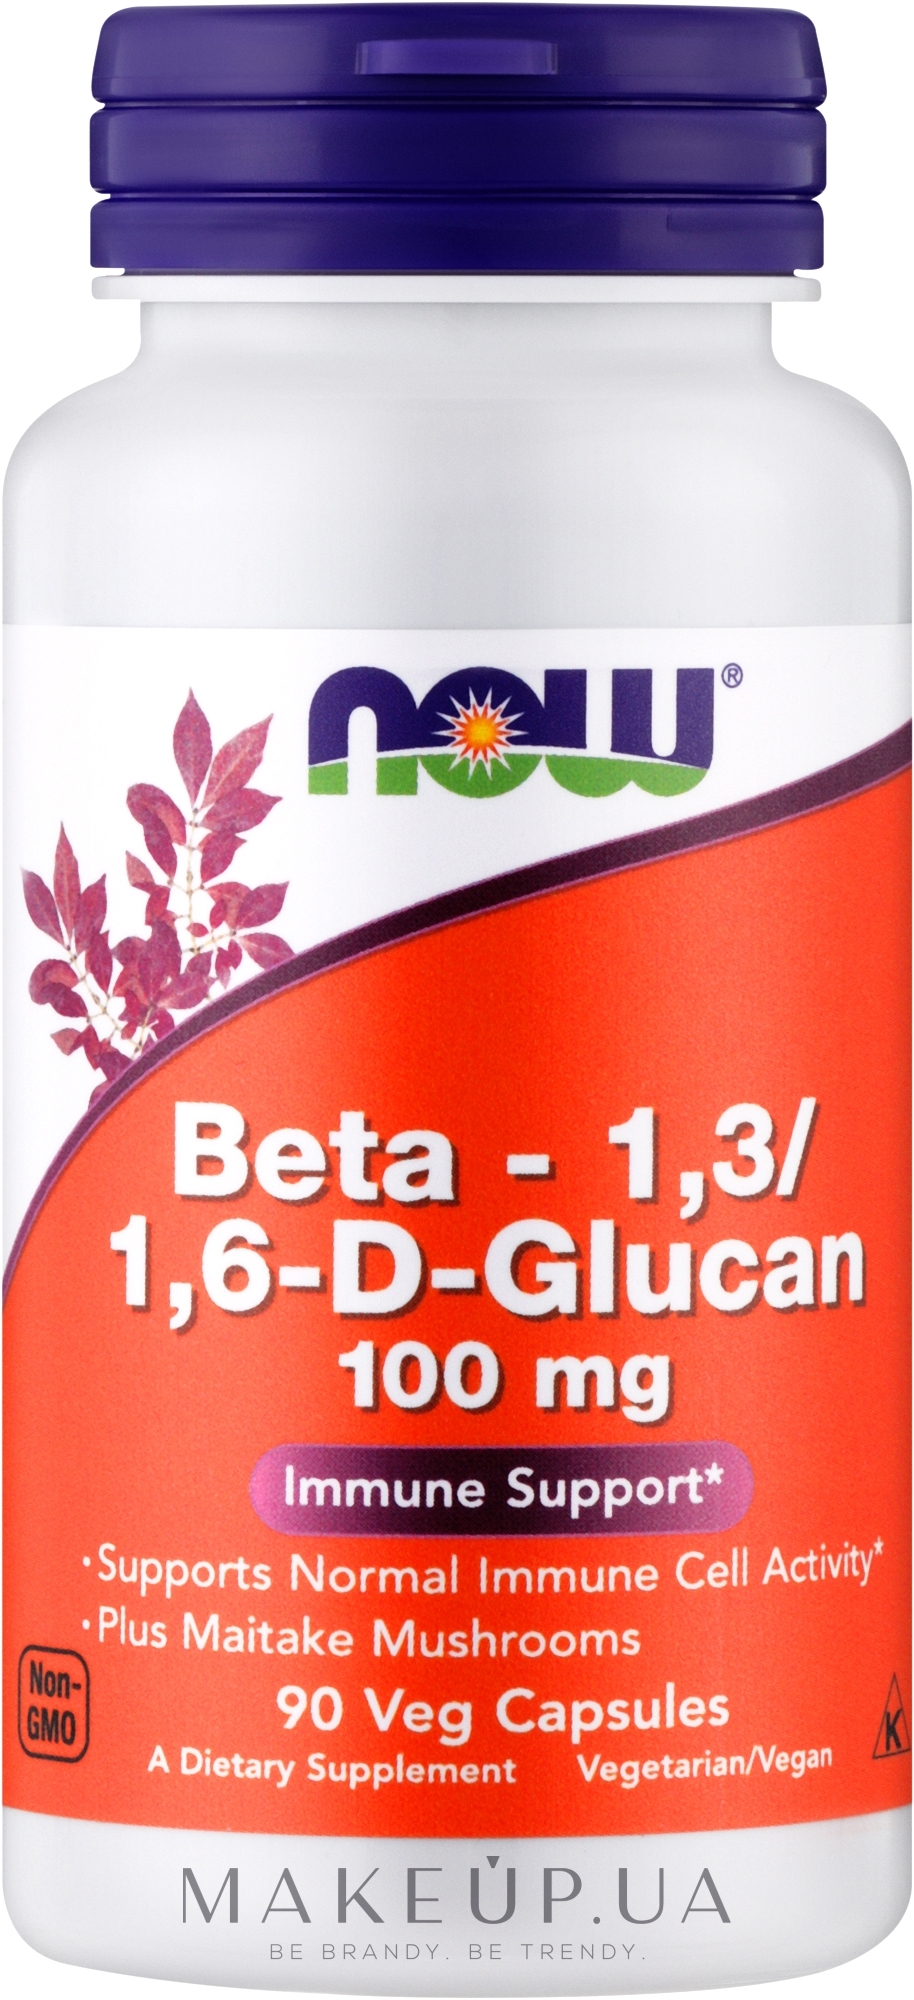 Пищевая добавка в порошке "Бета-1,3/1,6-D-глюкан", 100 мг - Now Foods Beta-1,3/1,6-D-Glucan  — фото 90шт